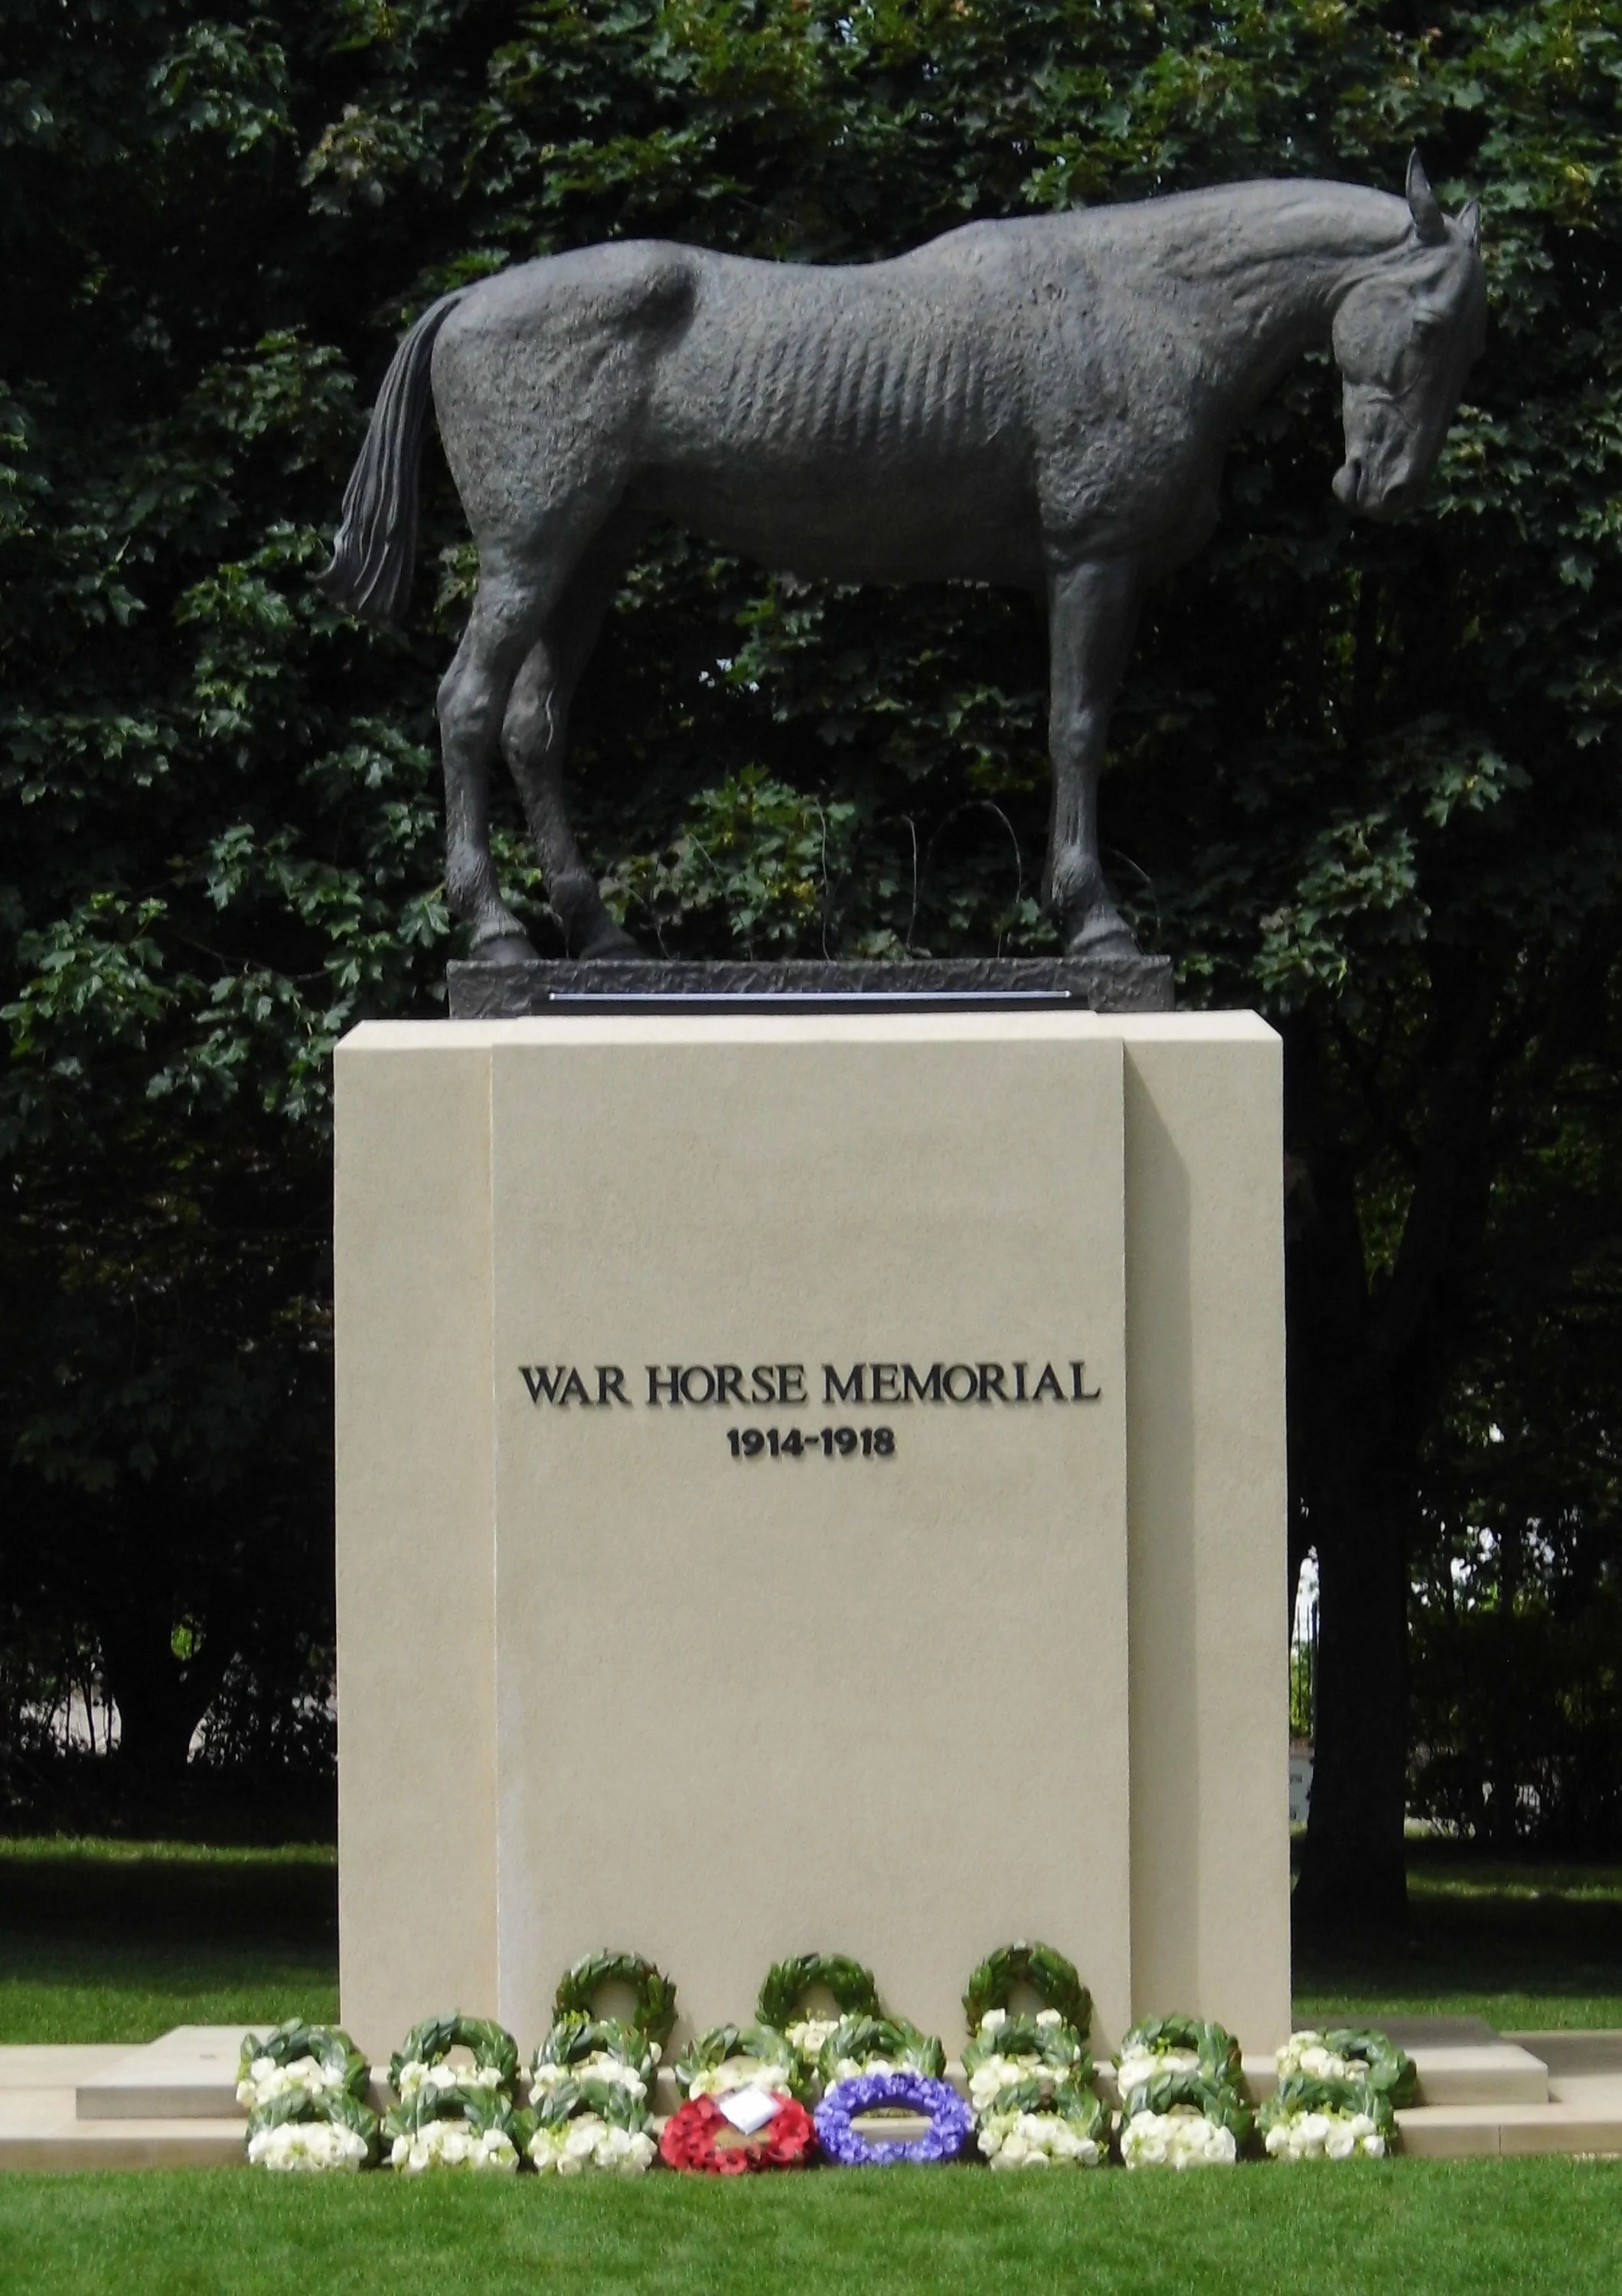 War Horse 2